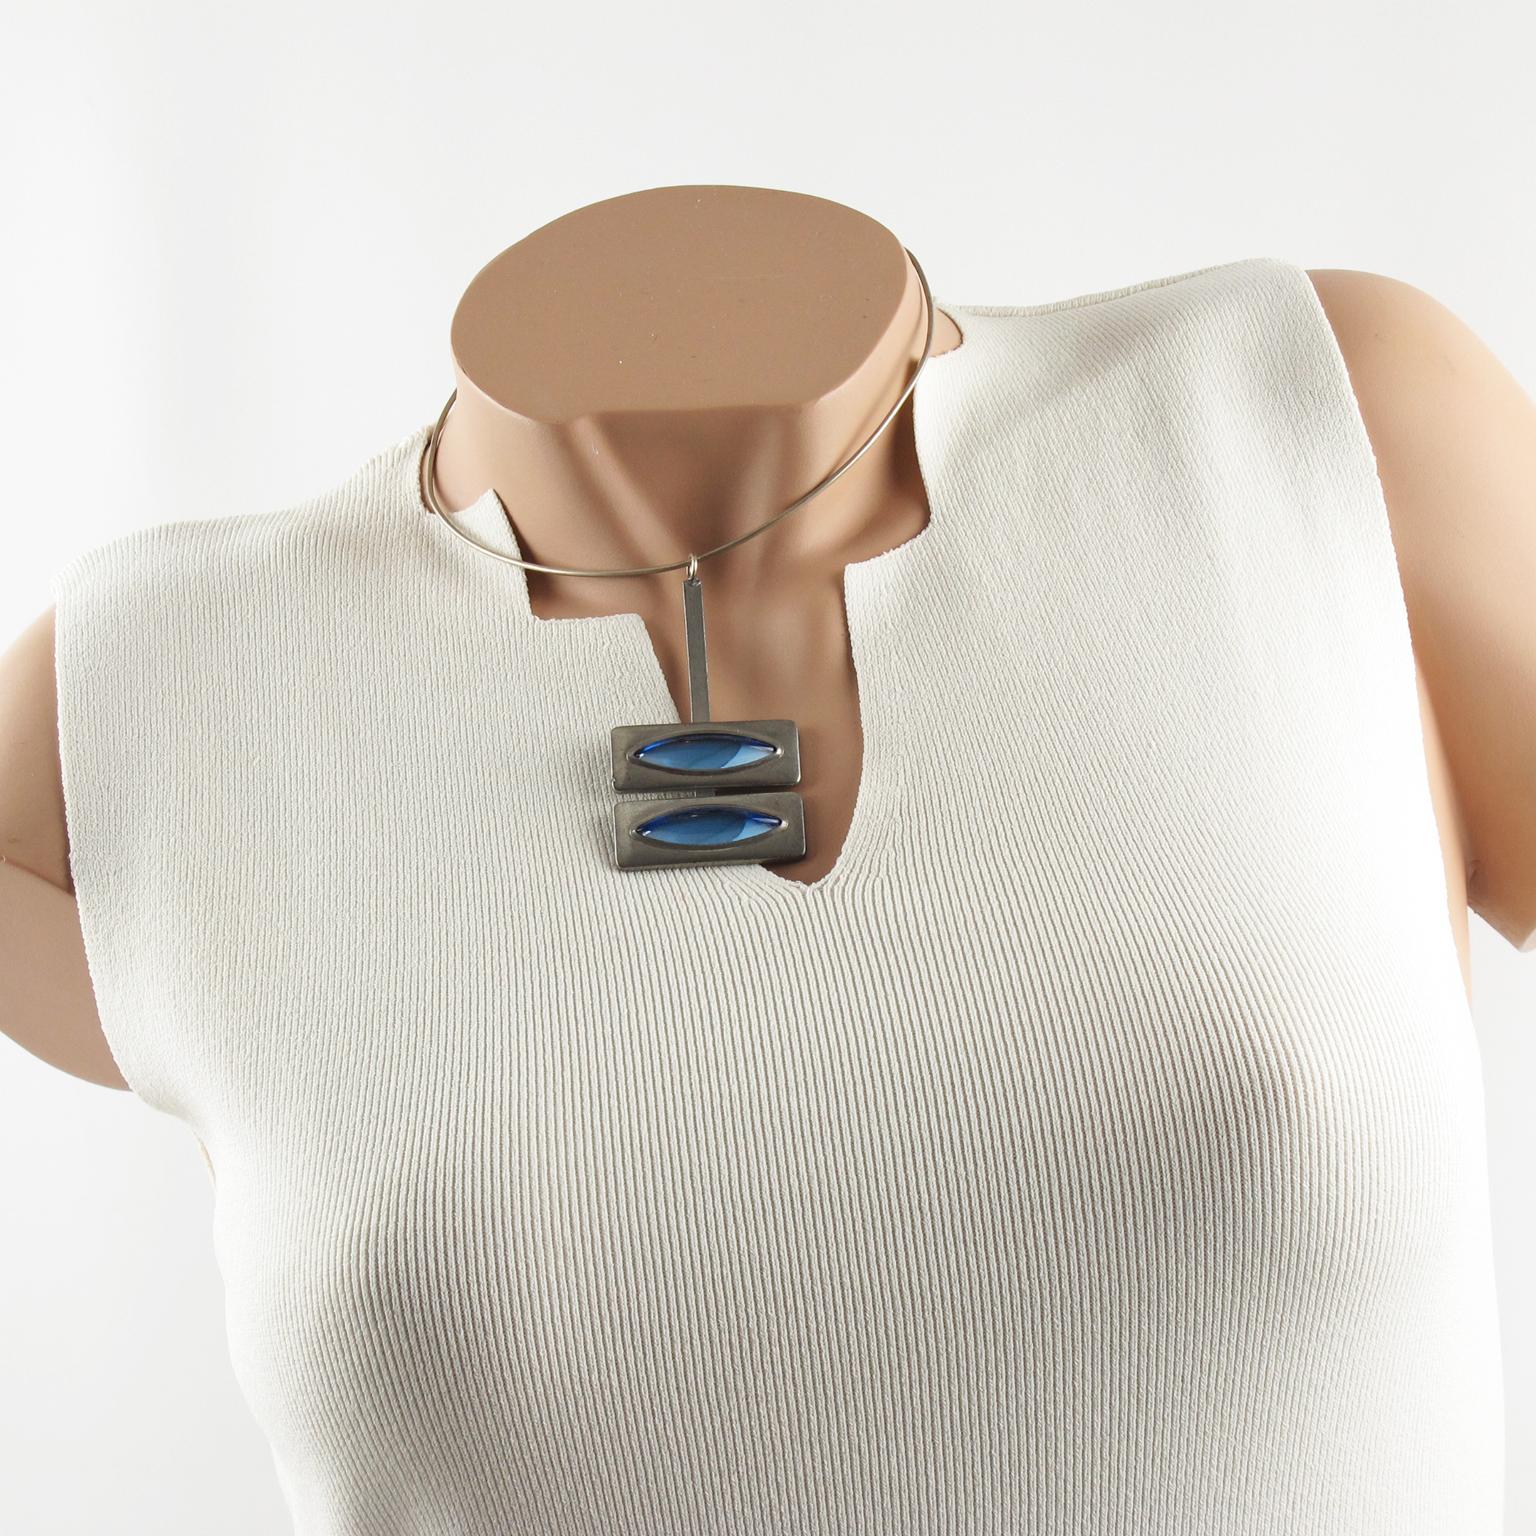 Der dänische Schmuckkünstler Jorgen Jensen entwarf diese elegante, modernistische Space-Age-Anhänger-Halskette. Das Stück ist ganz aus Zinn mit arktischblauen gegossenen Glascabochons. Die Signatur des Künstlers befindet sich auf der Rückseite und